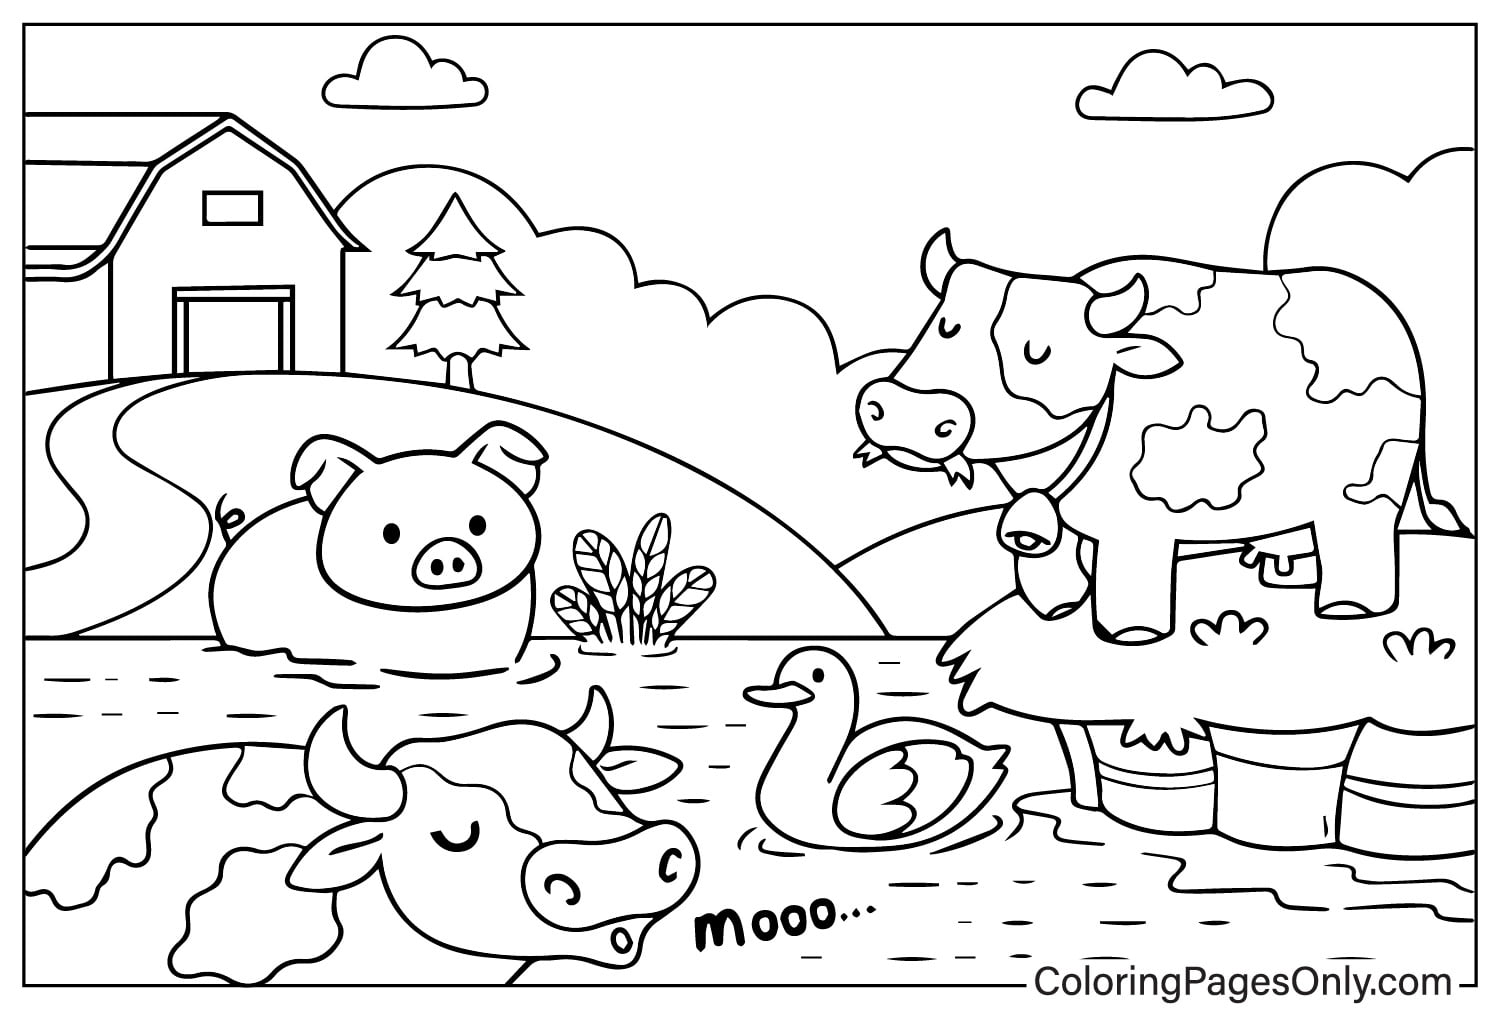 مزرعة الحيوانات مع الأبقار ولحم الخنزير والخنزير والبط من حيوانات المزرعة